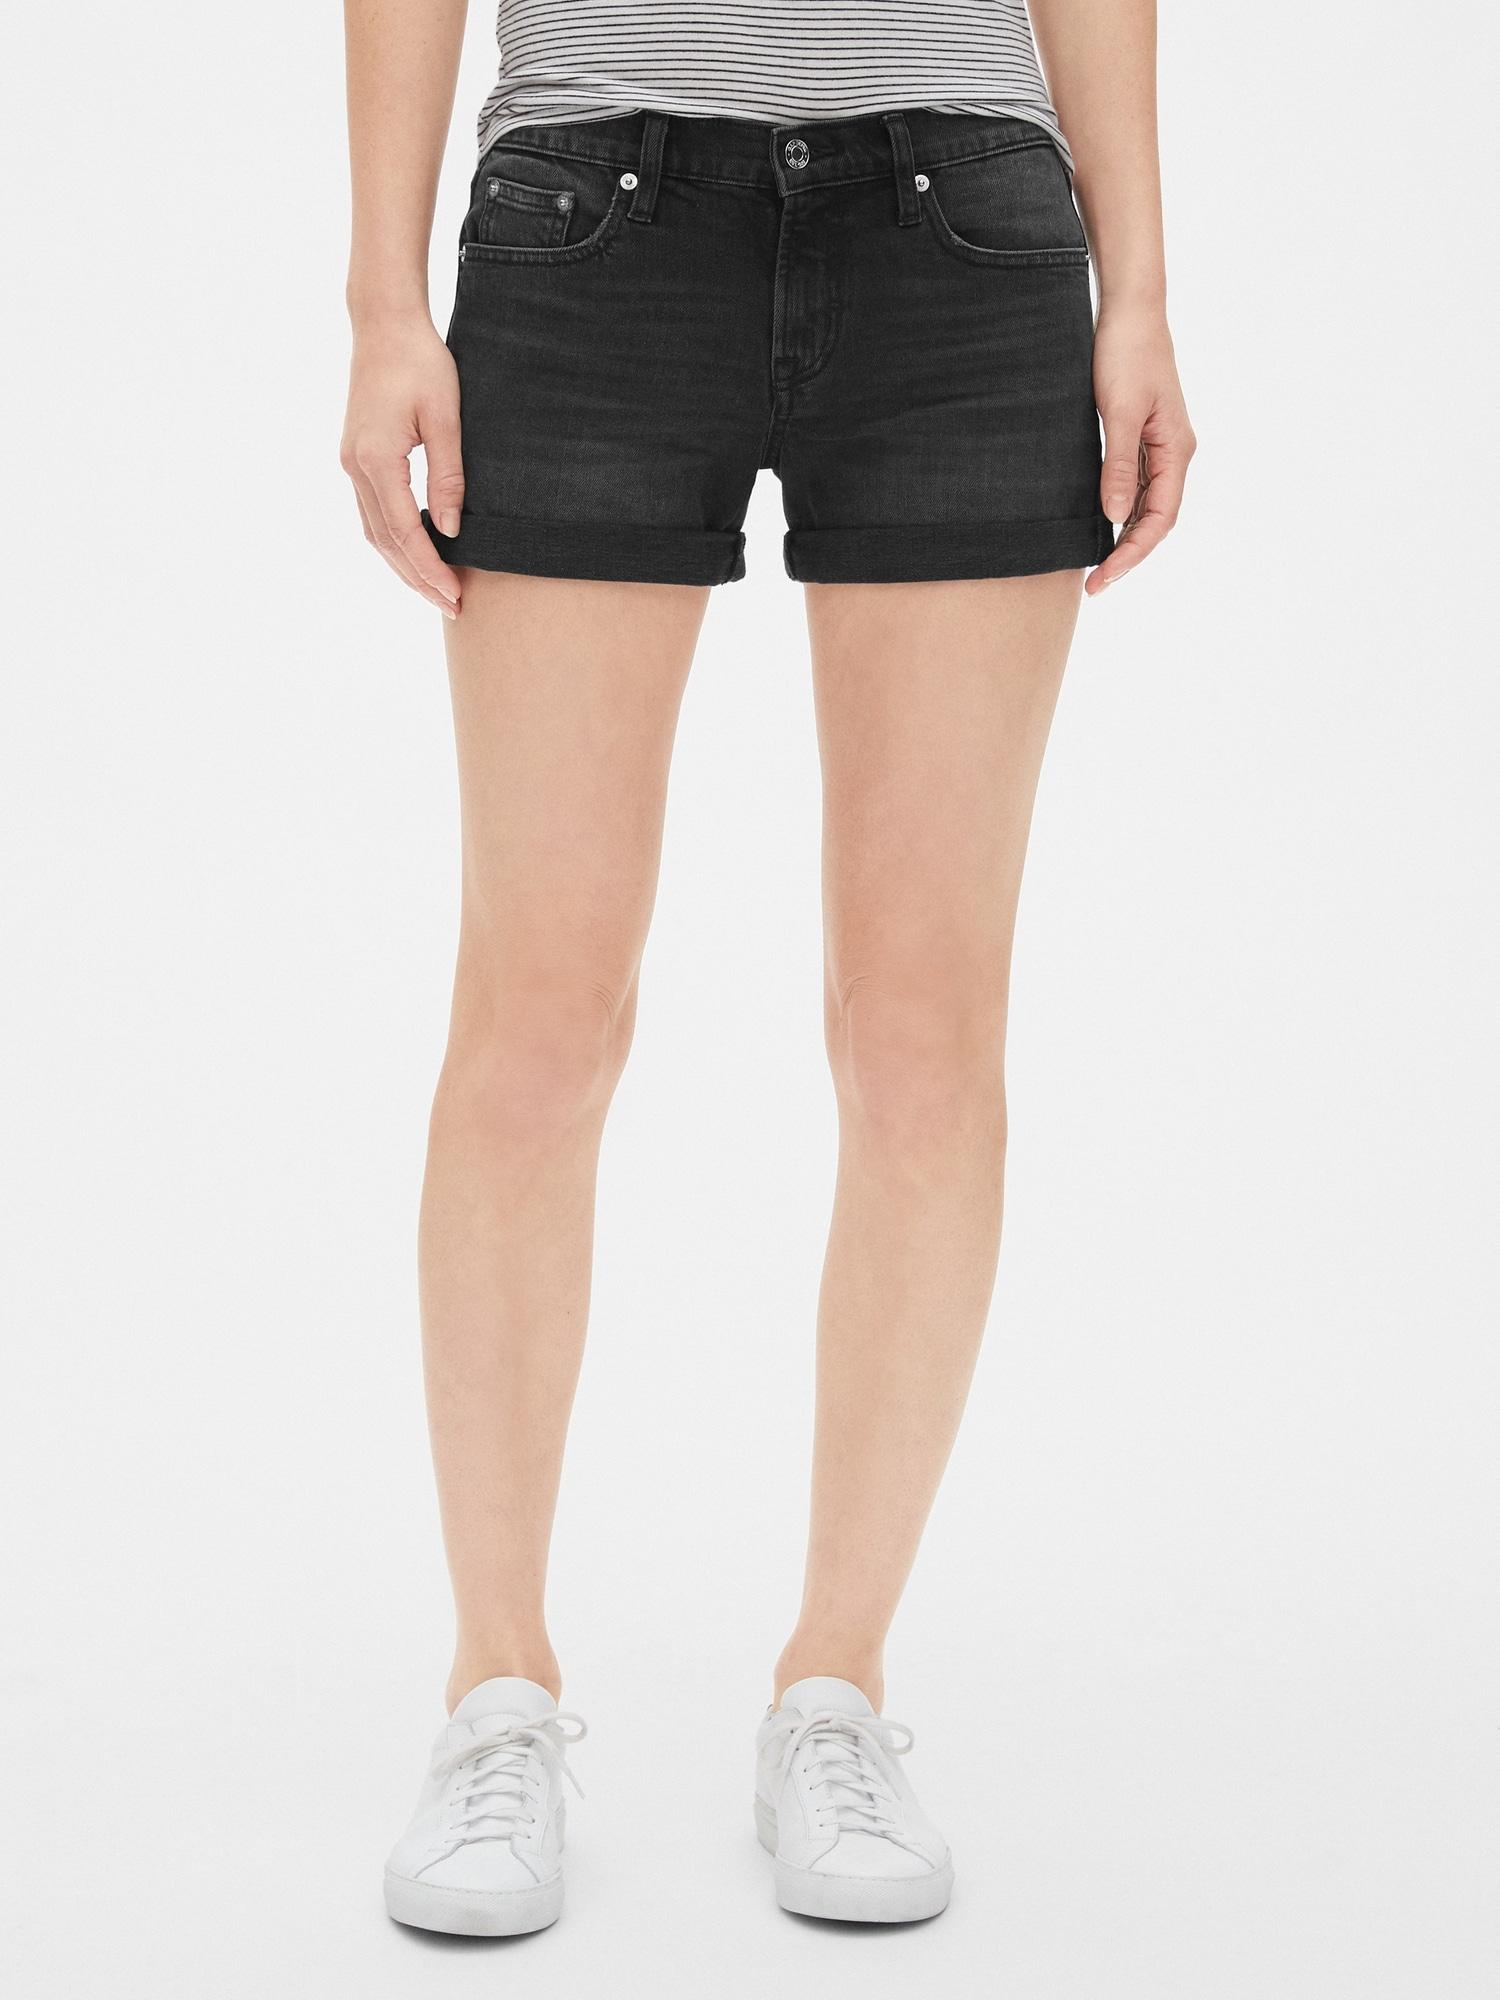 gap black denim shorts